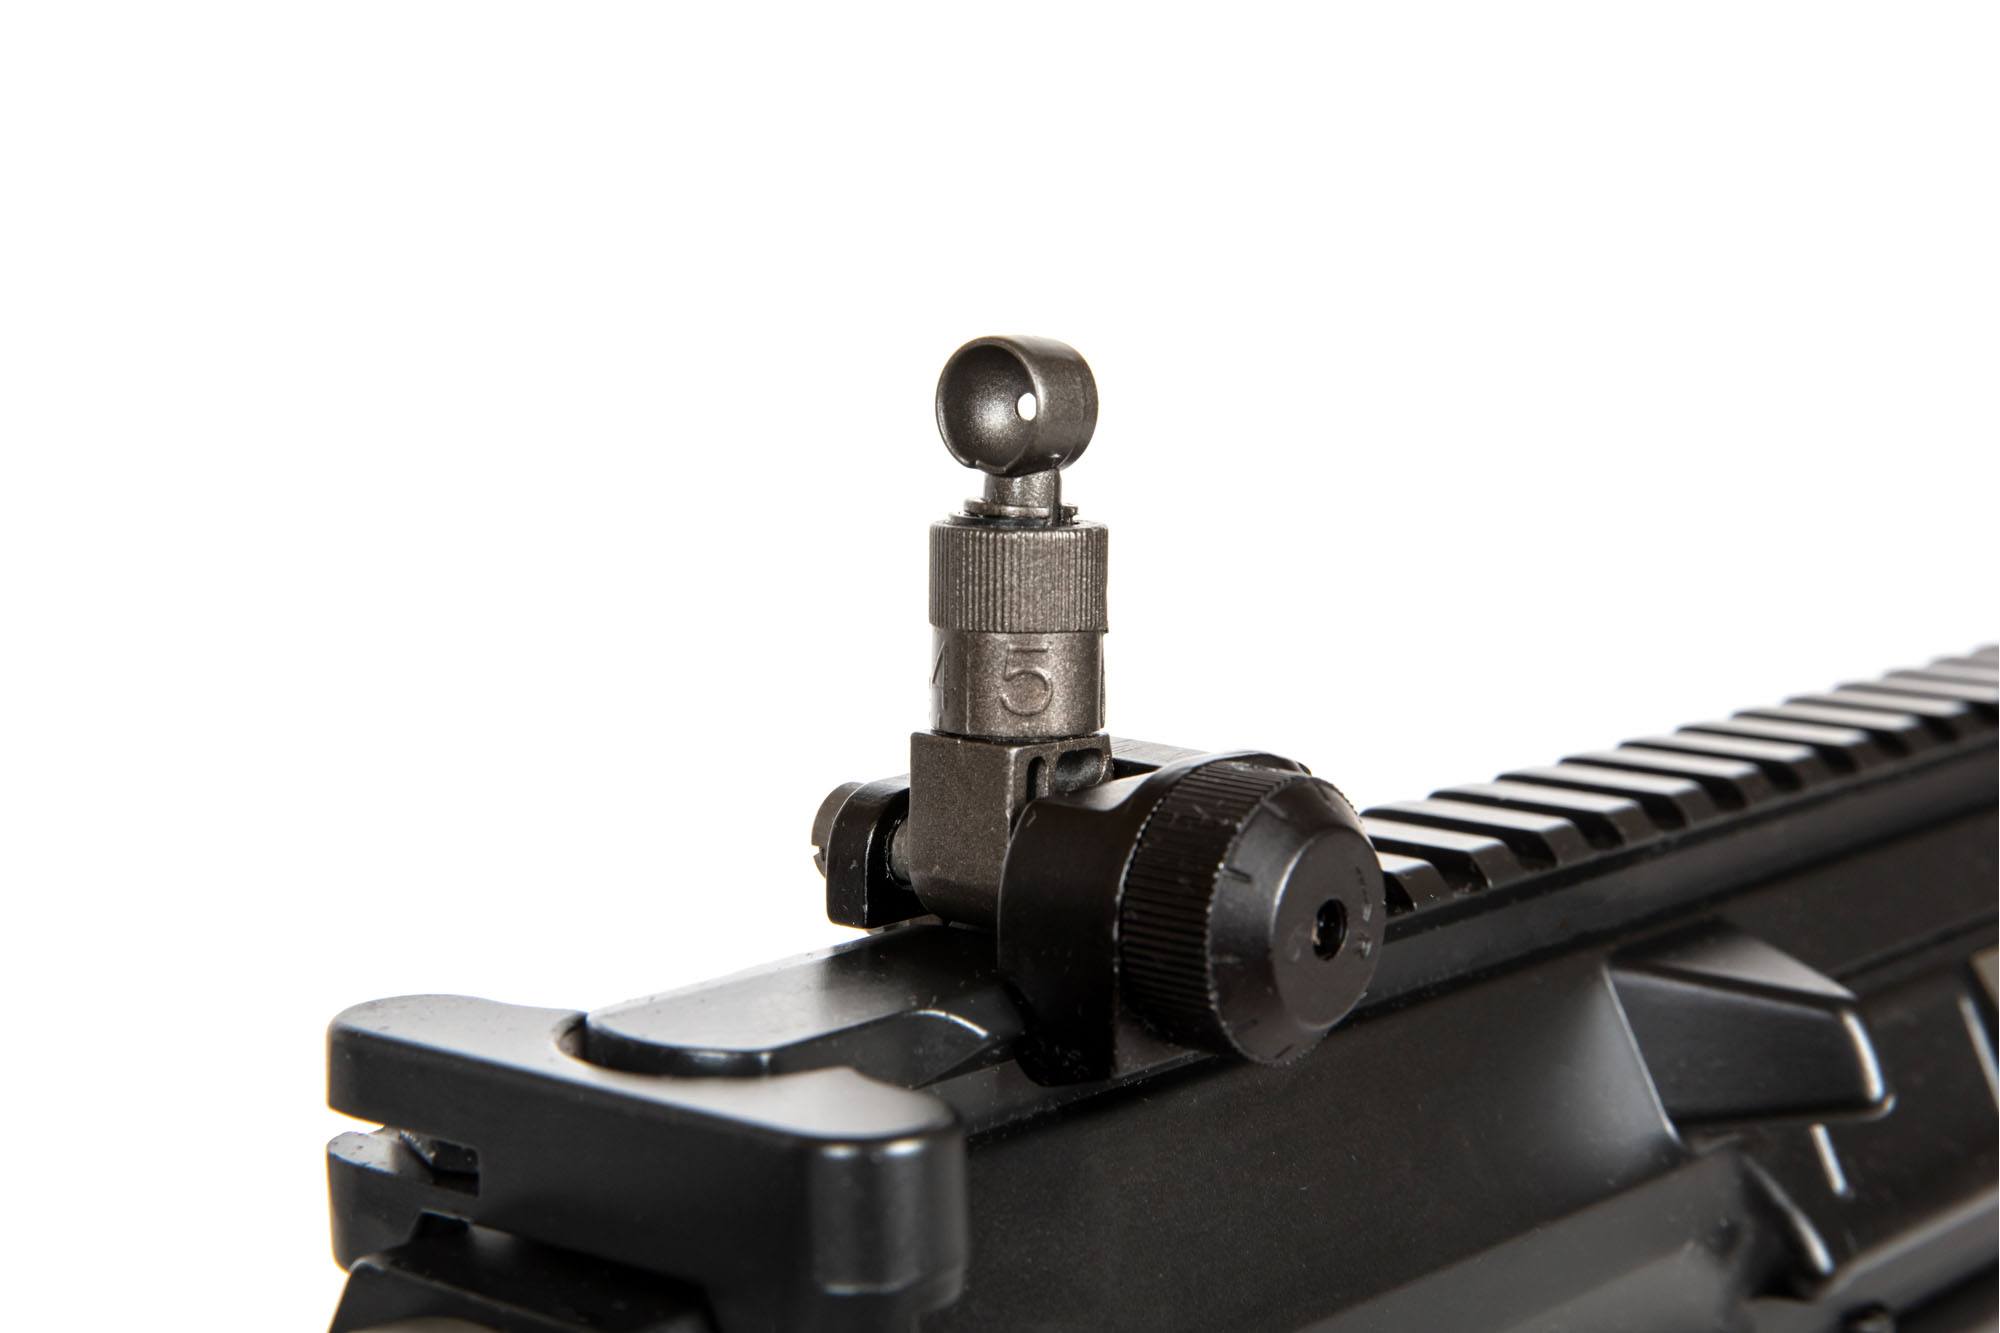 M110 Sniper Rifle Replica - Black